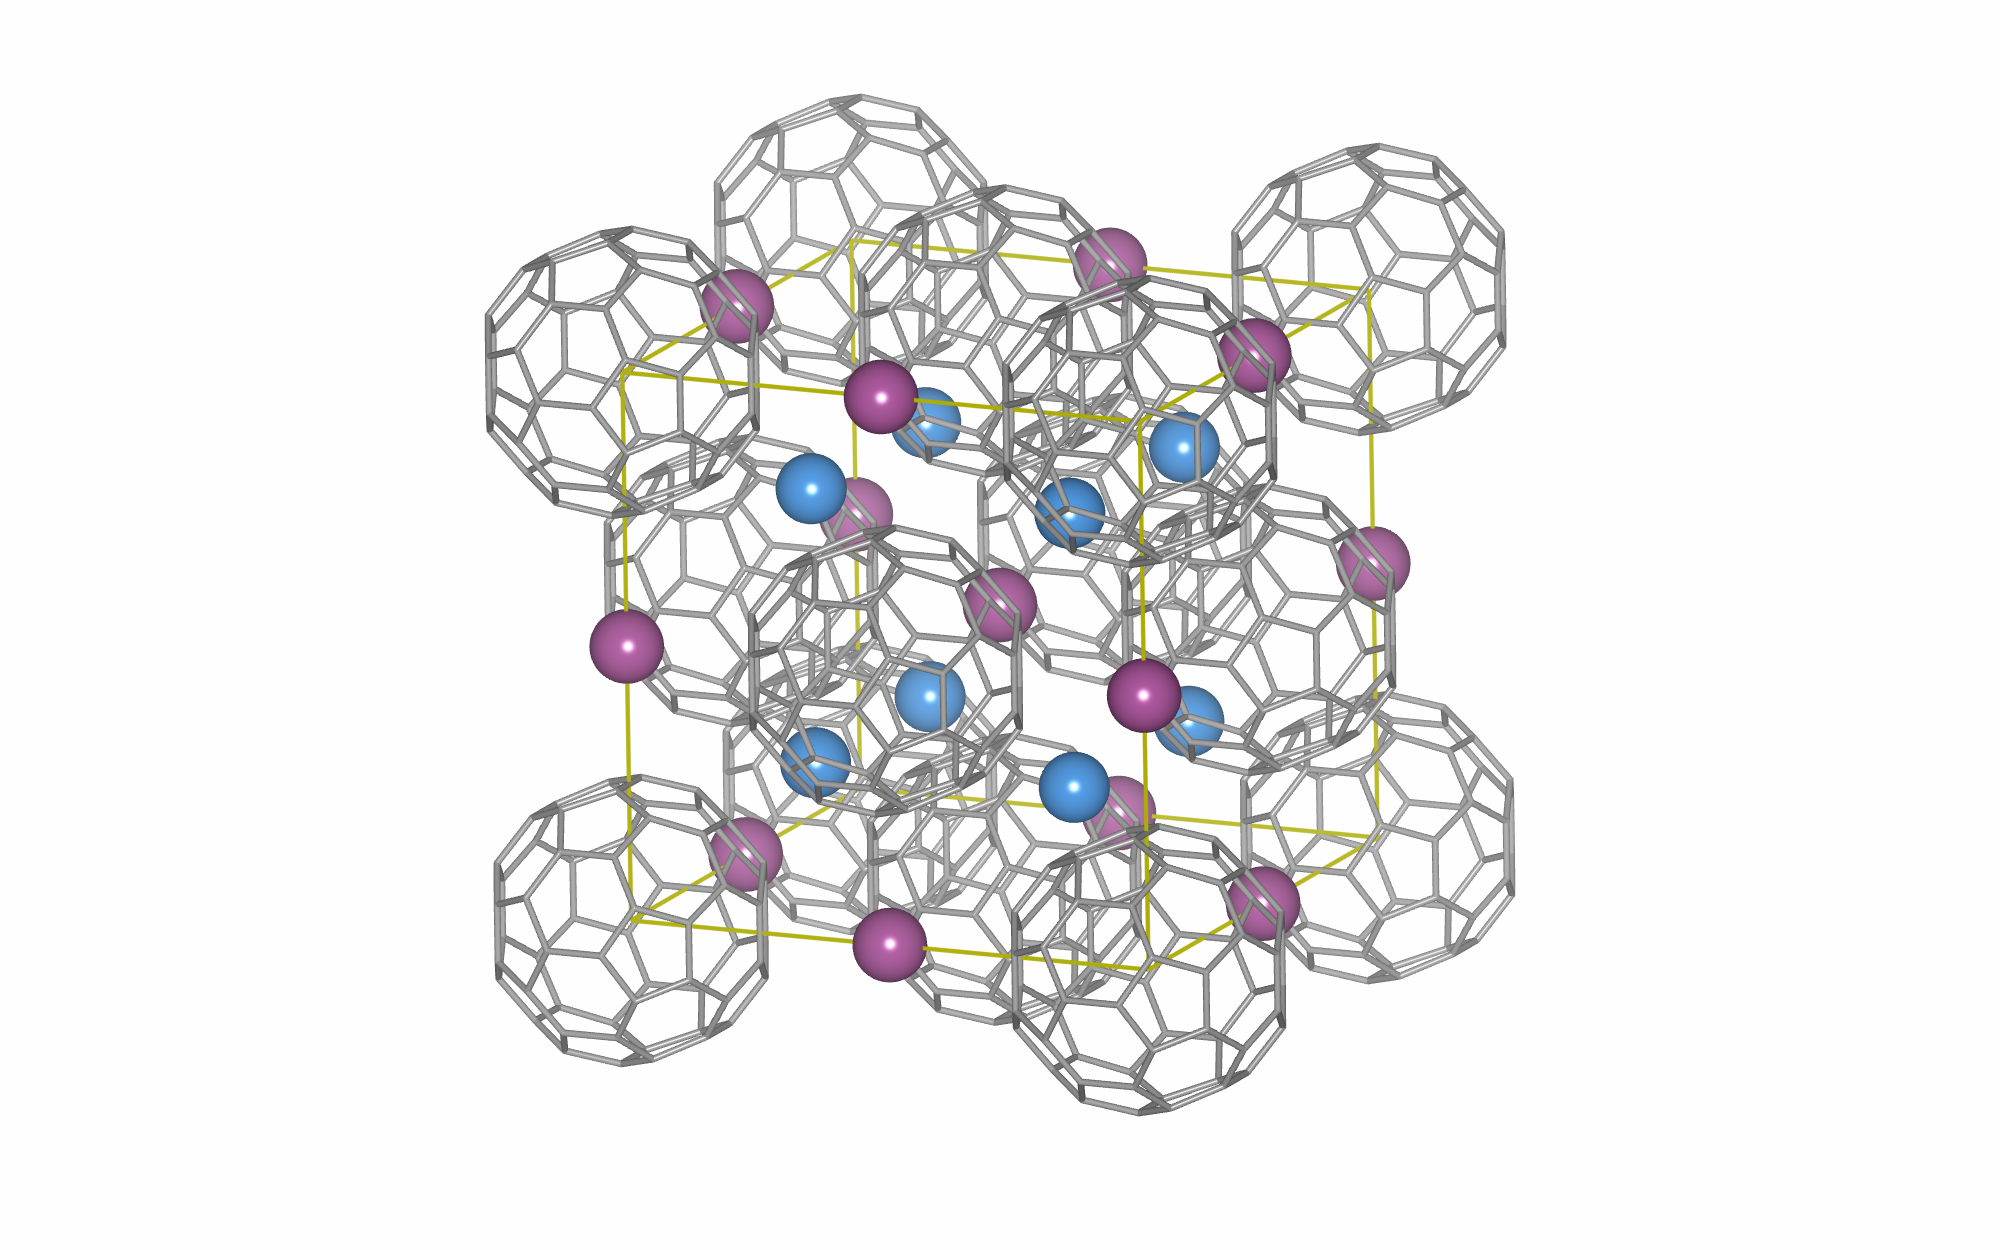 図１：灰色のボールの様な物は炭素が60個集まって形成されたフラーレンC60分子。C60結晶格子の中には2種類の隙間（赤と青の球）が存在し、様々な物質を添加することができる。